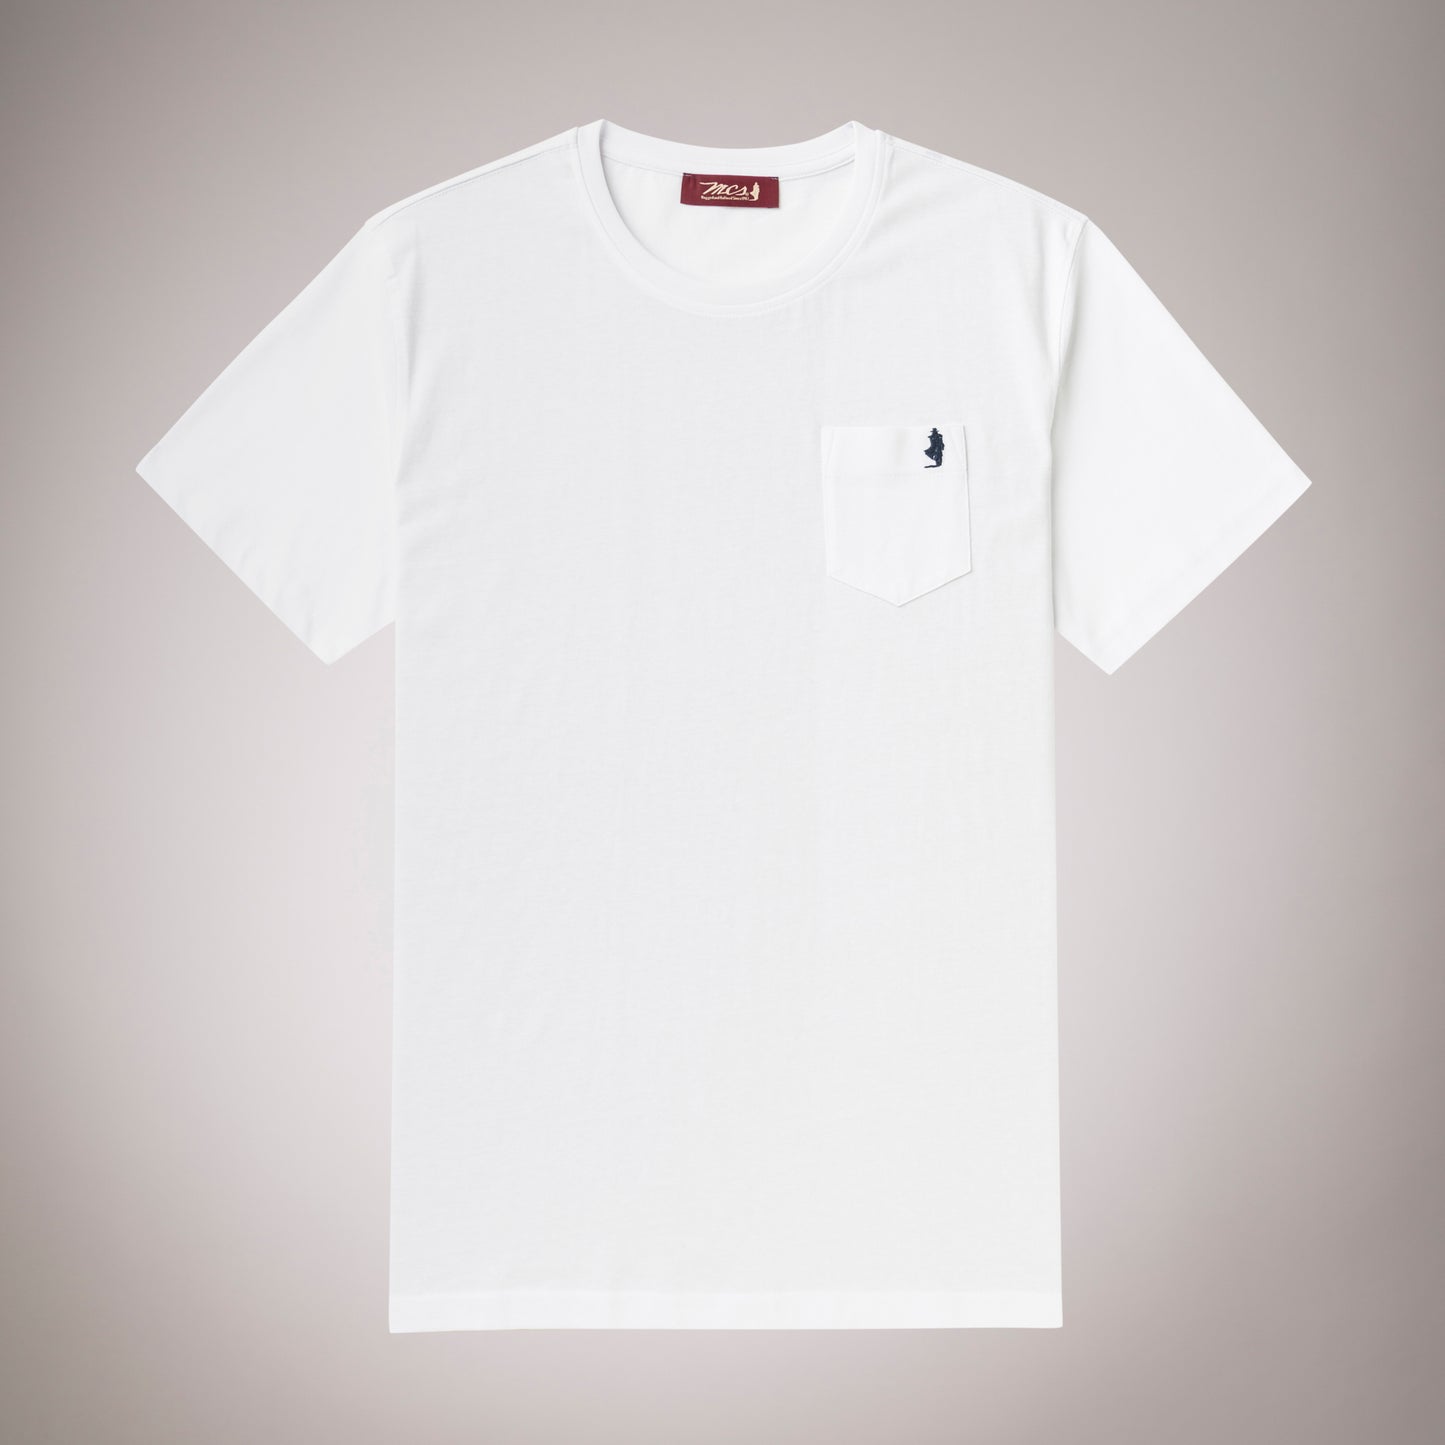 Marlboro Classics White Pocket T-Shirt